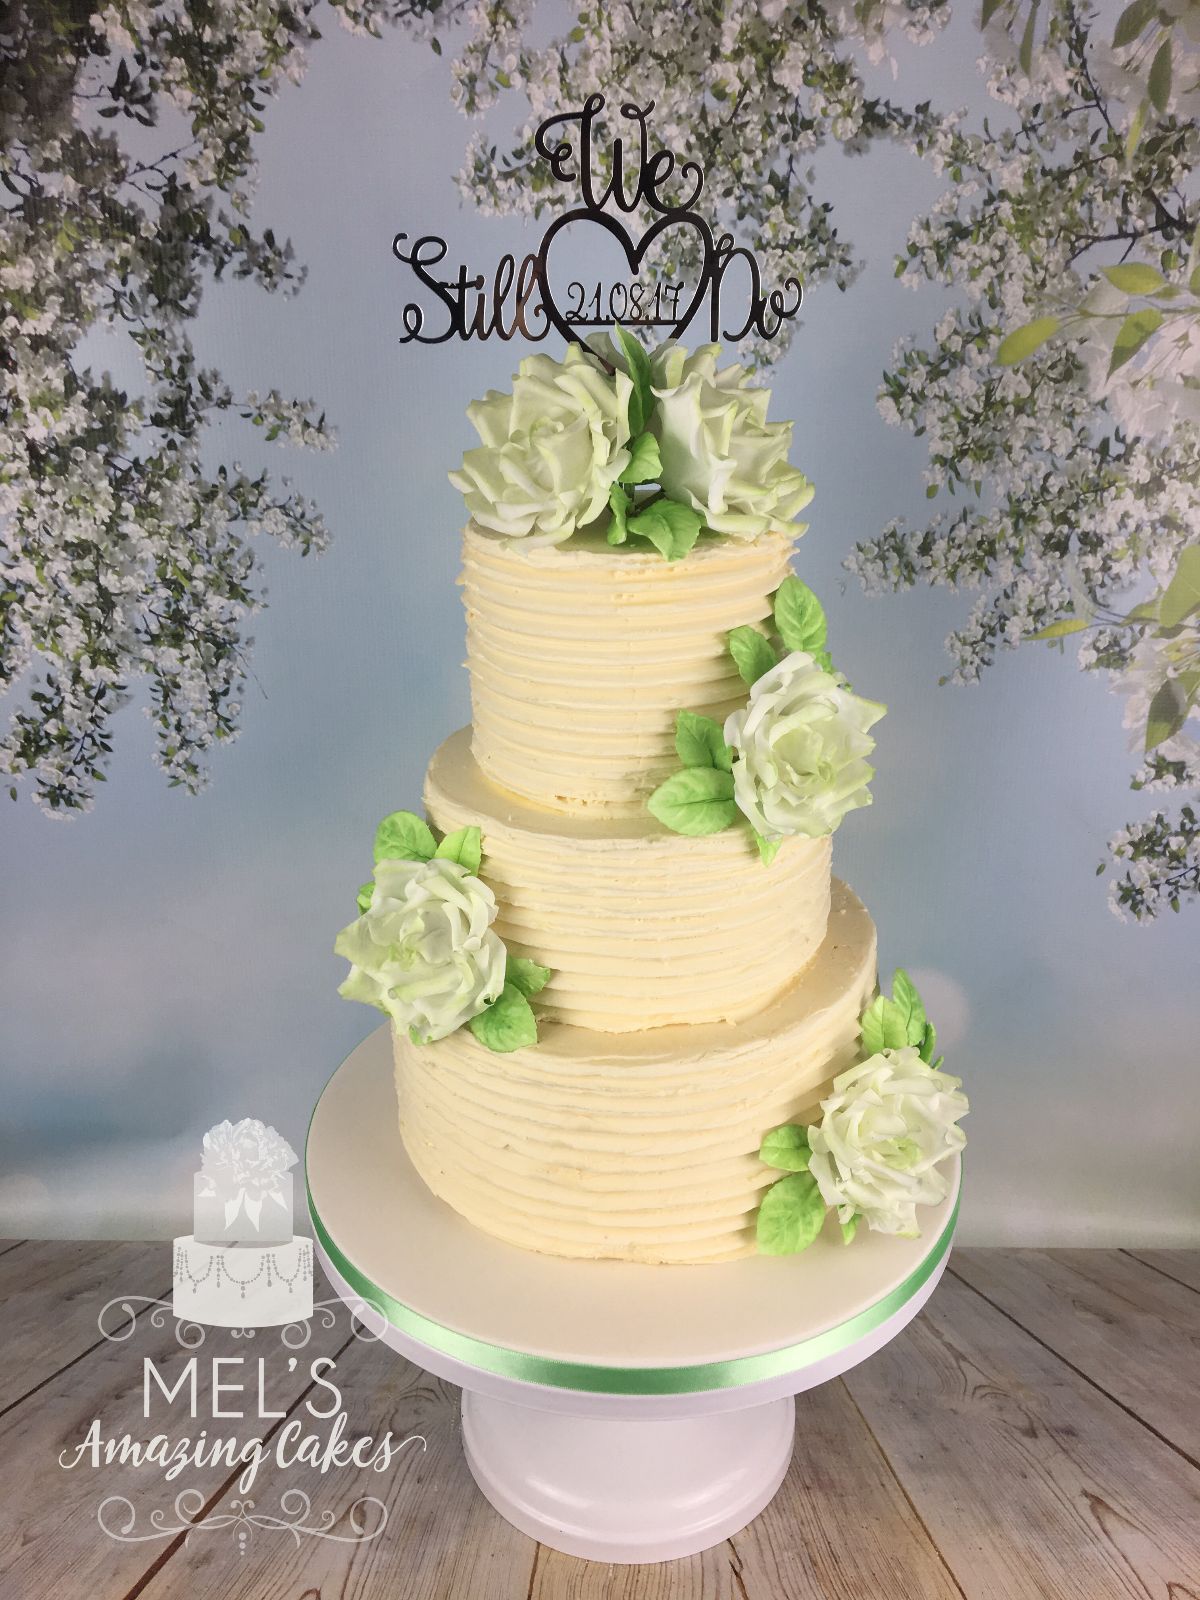 Mel's Amazing Cakes-Image-97